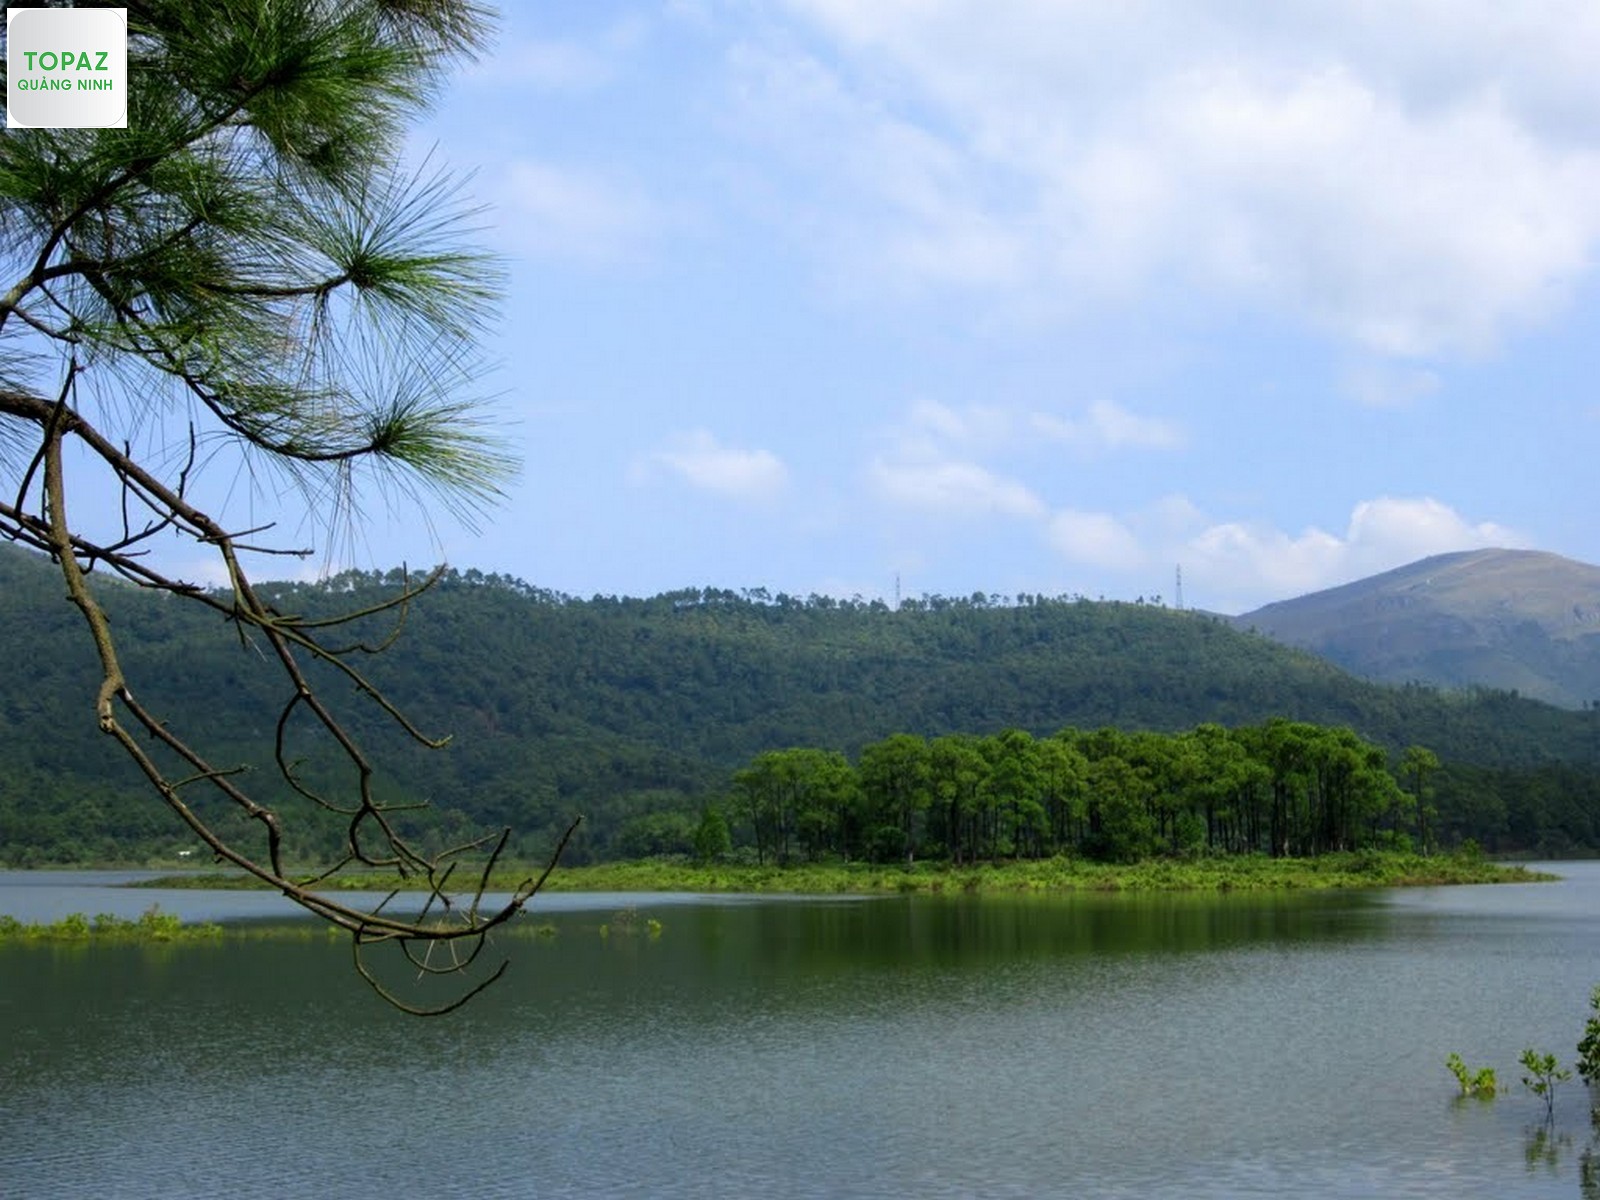 Mặt hồ Yên Trung trong vắt, tĩnh lặng như gương soi